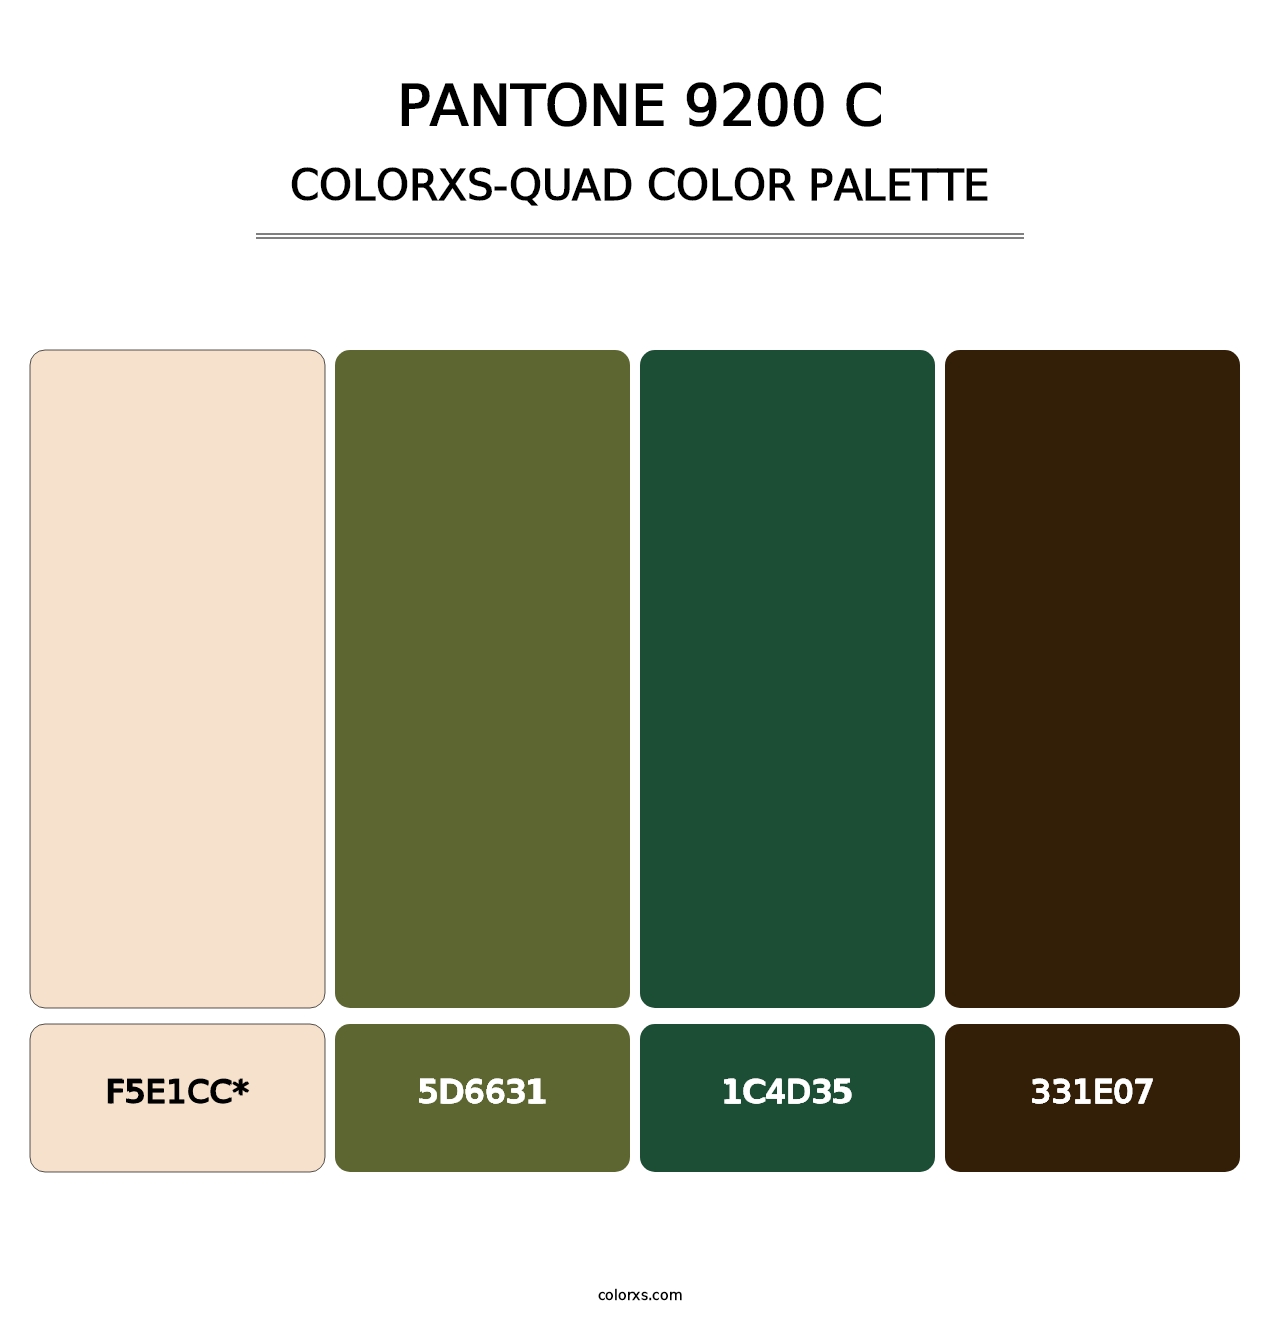 PANTONE 9200 C - Colorxs Quad Palette